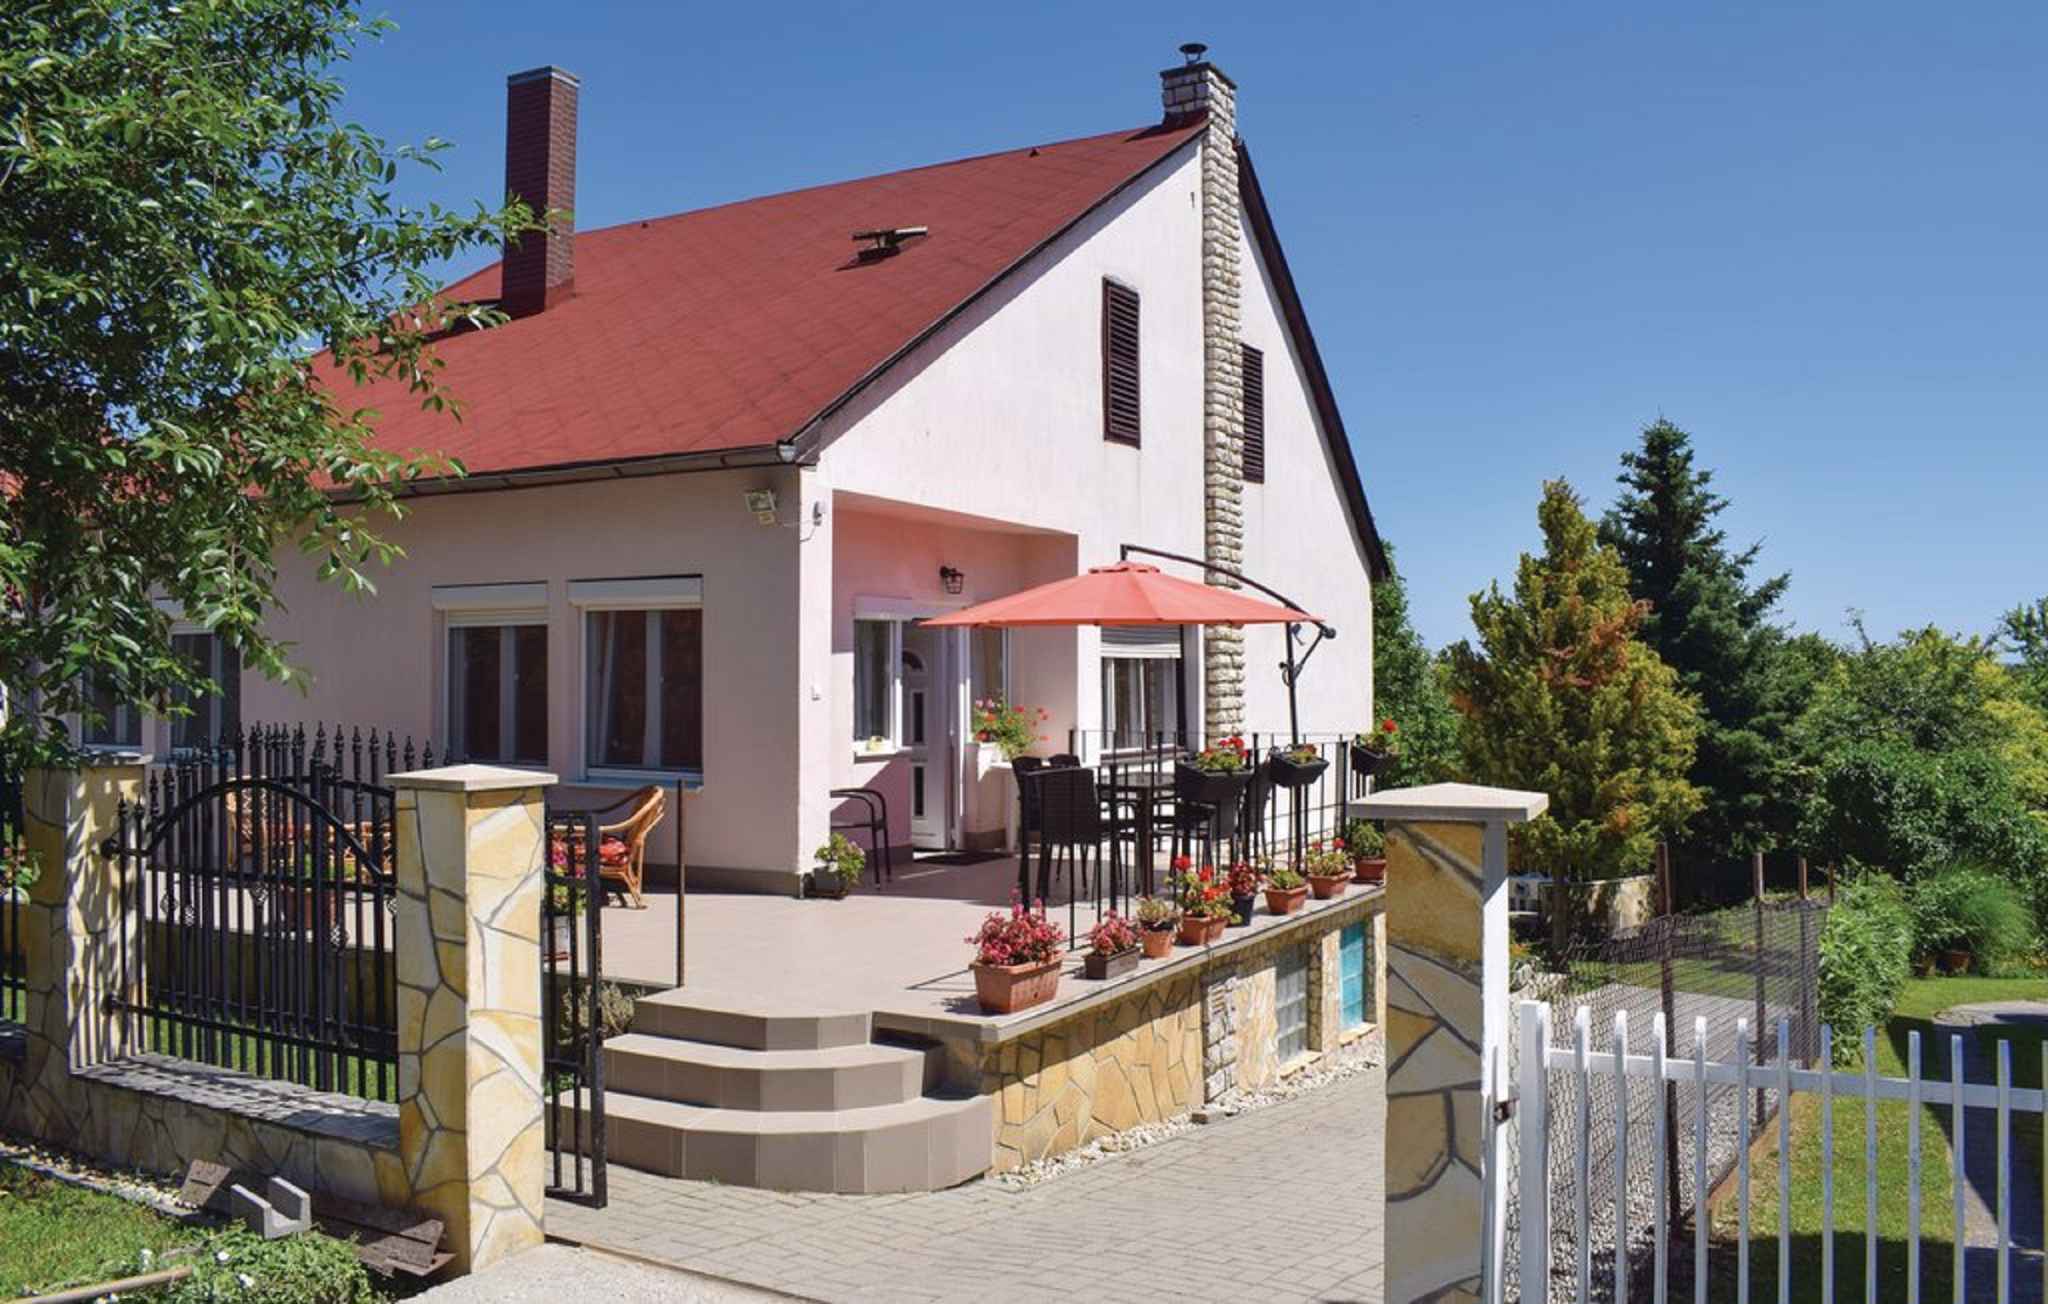 Ferienhaus mit WLAN und schöner Terrasse Ferienhaus in Ungarn